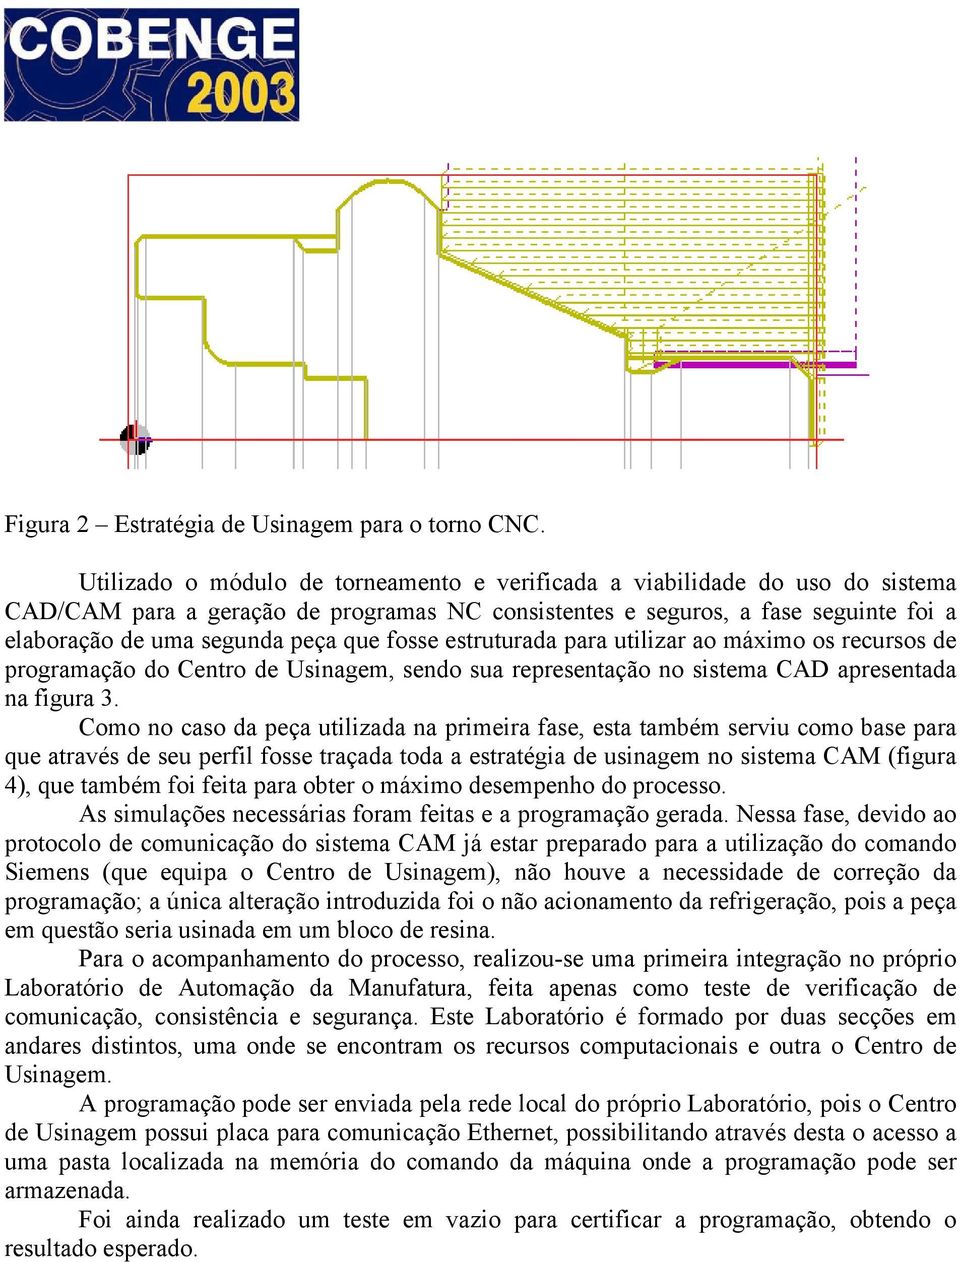 fosse estruturada para utilizar ao máximo os recursos de programação do Centro de Usinagem, sendo sua representação no sistema CAD apresentada na figura 3.